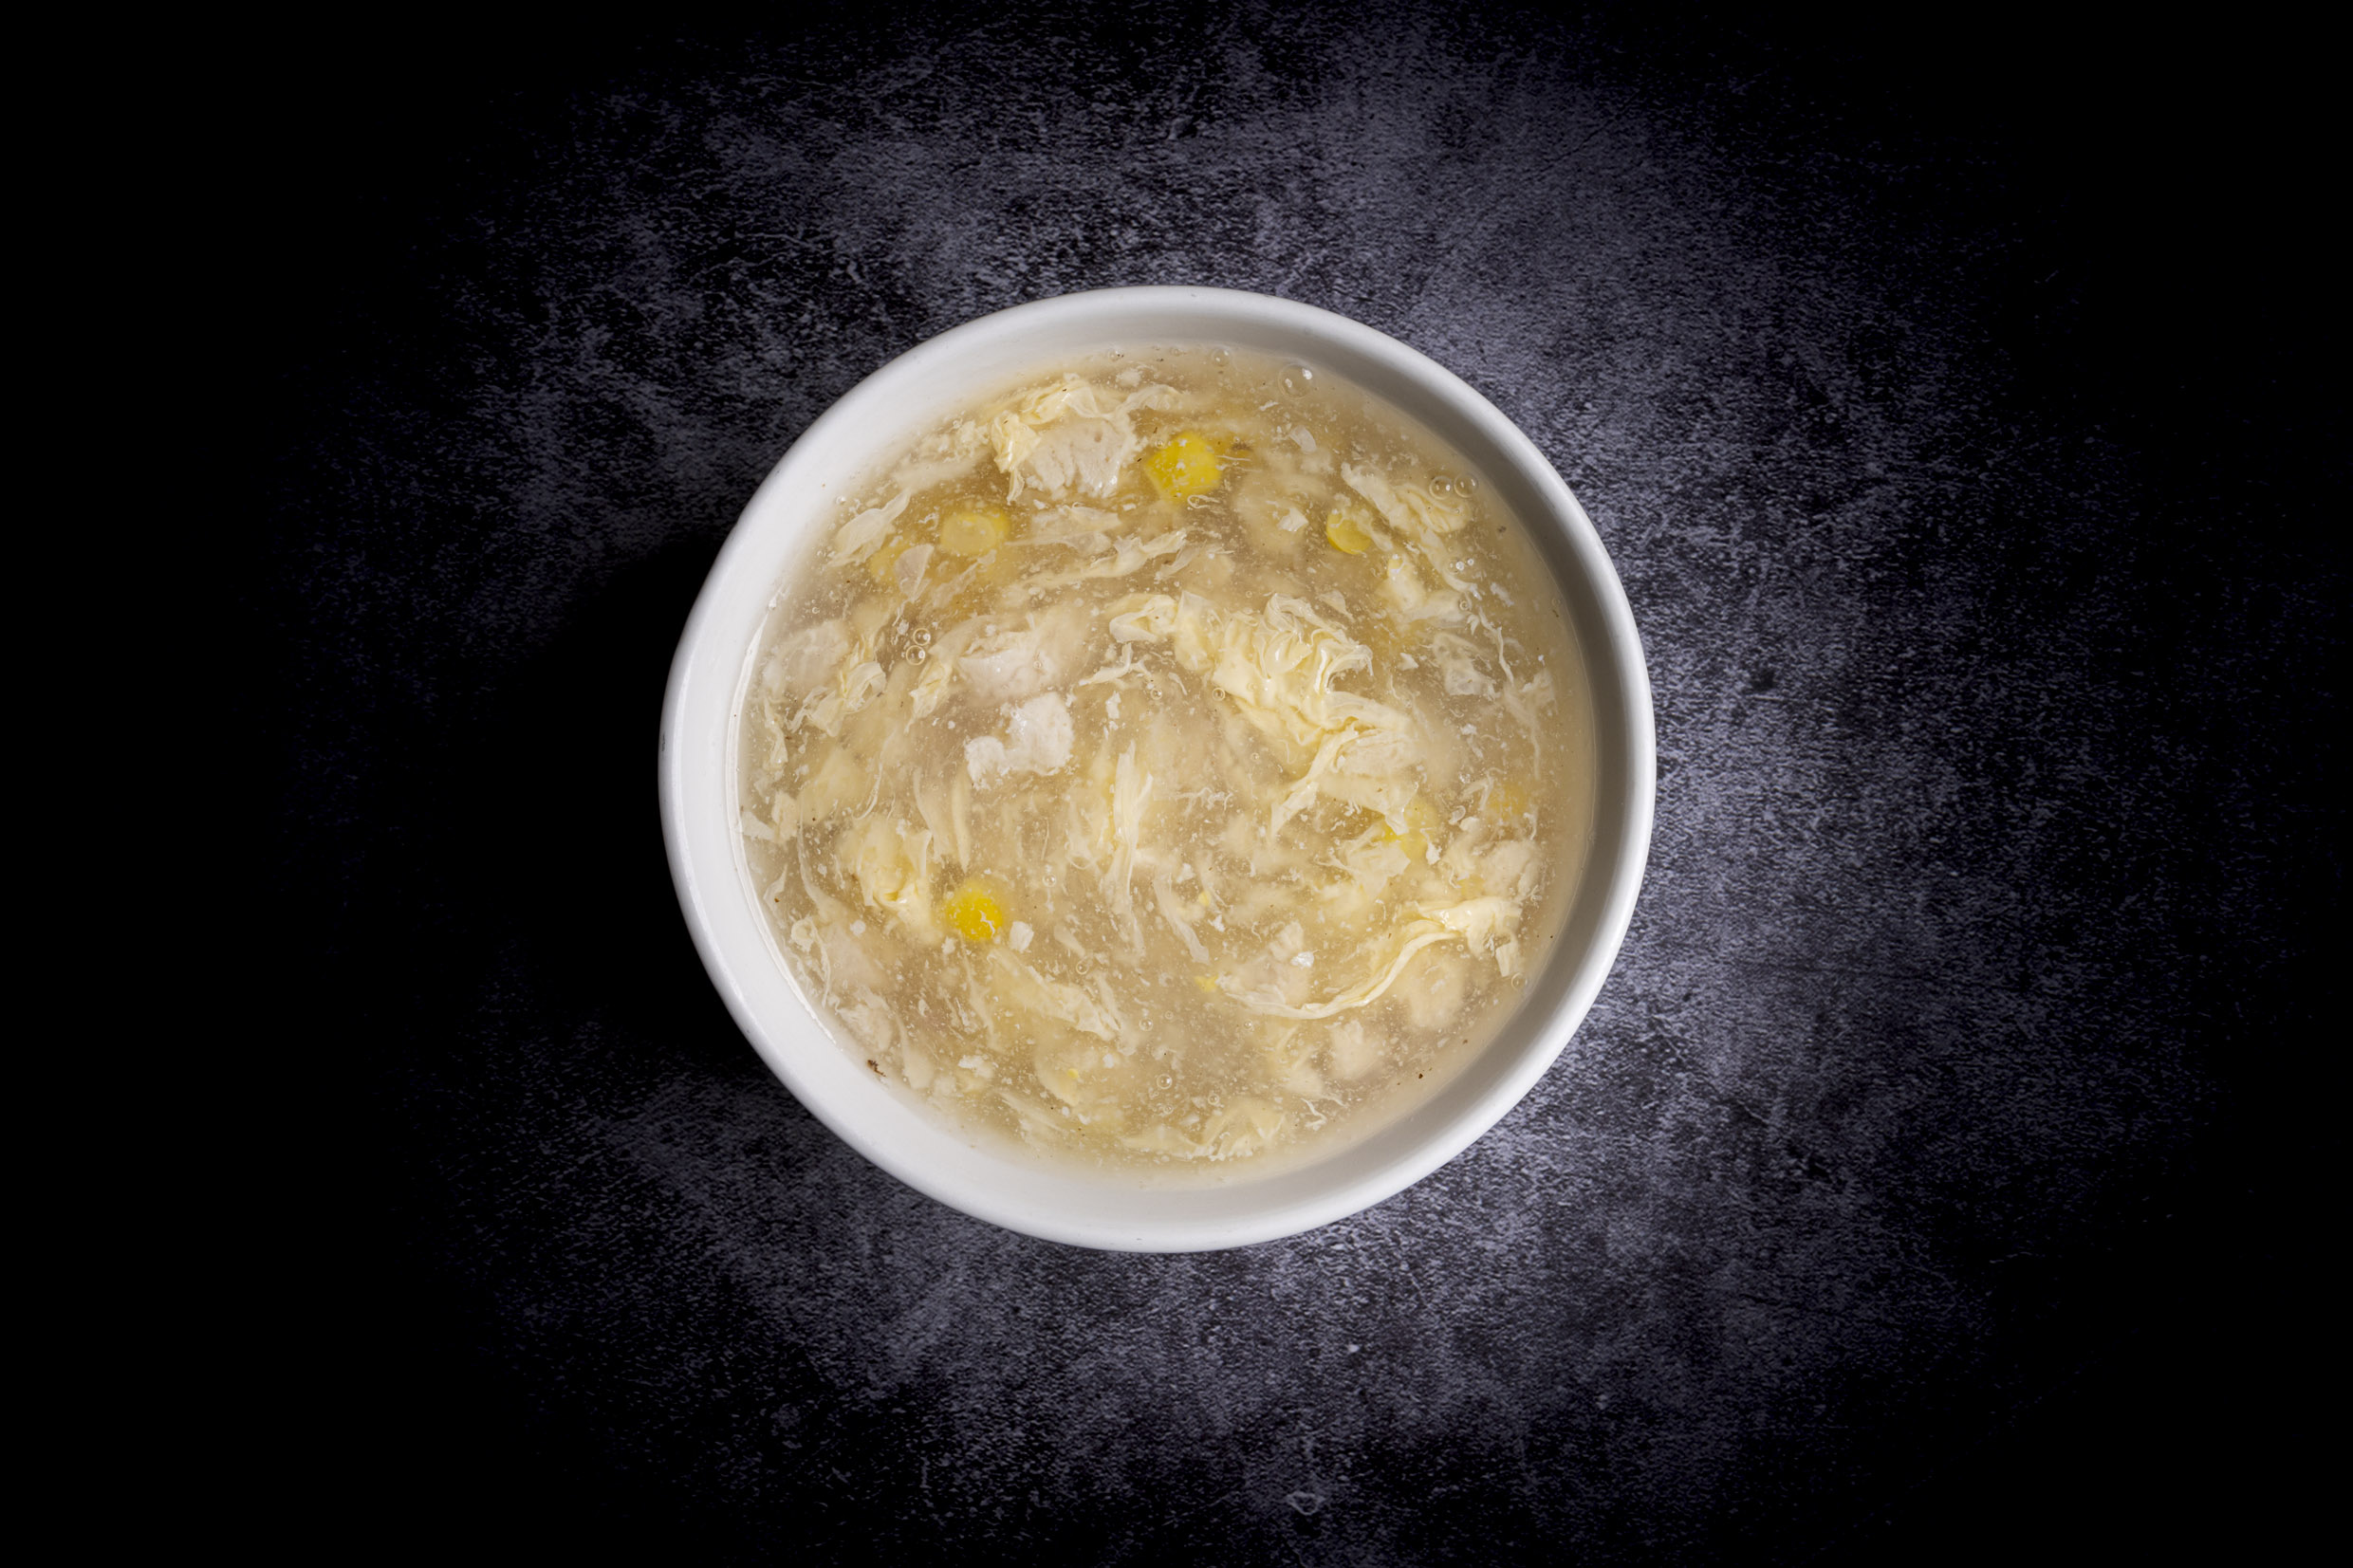 雞茸粟米羹 | Potage de maïs avec du poulet